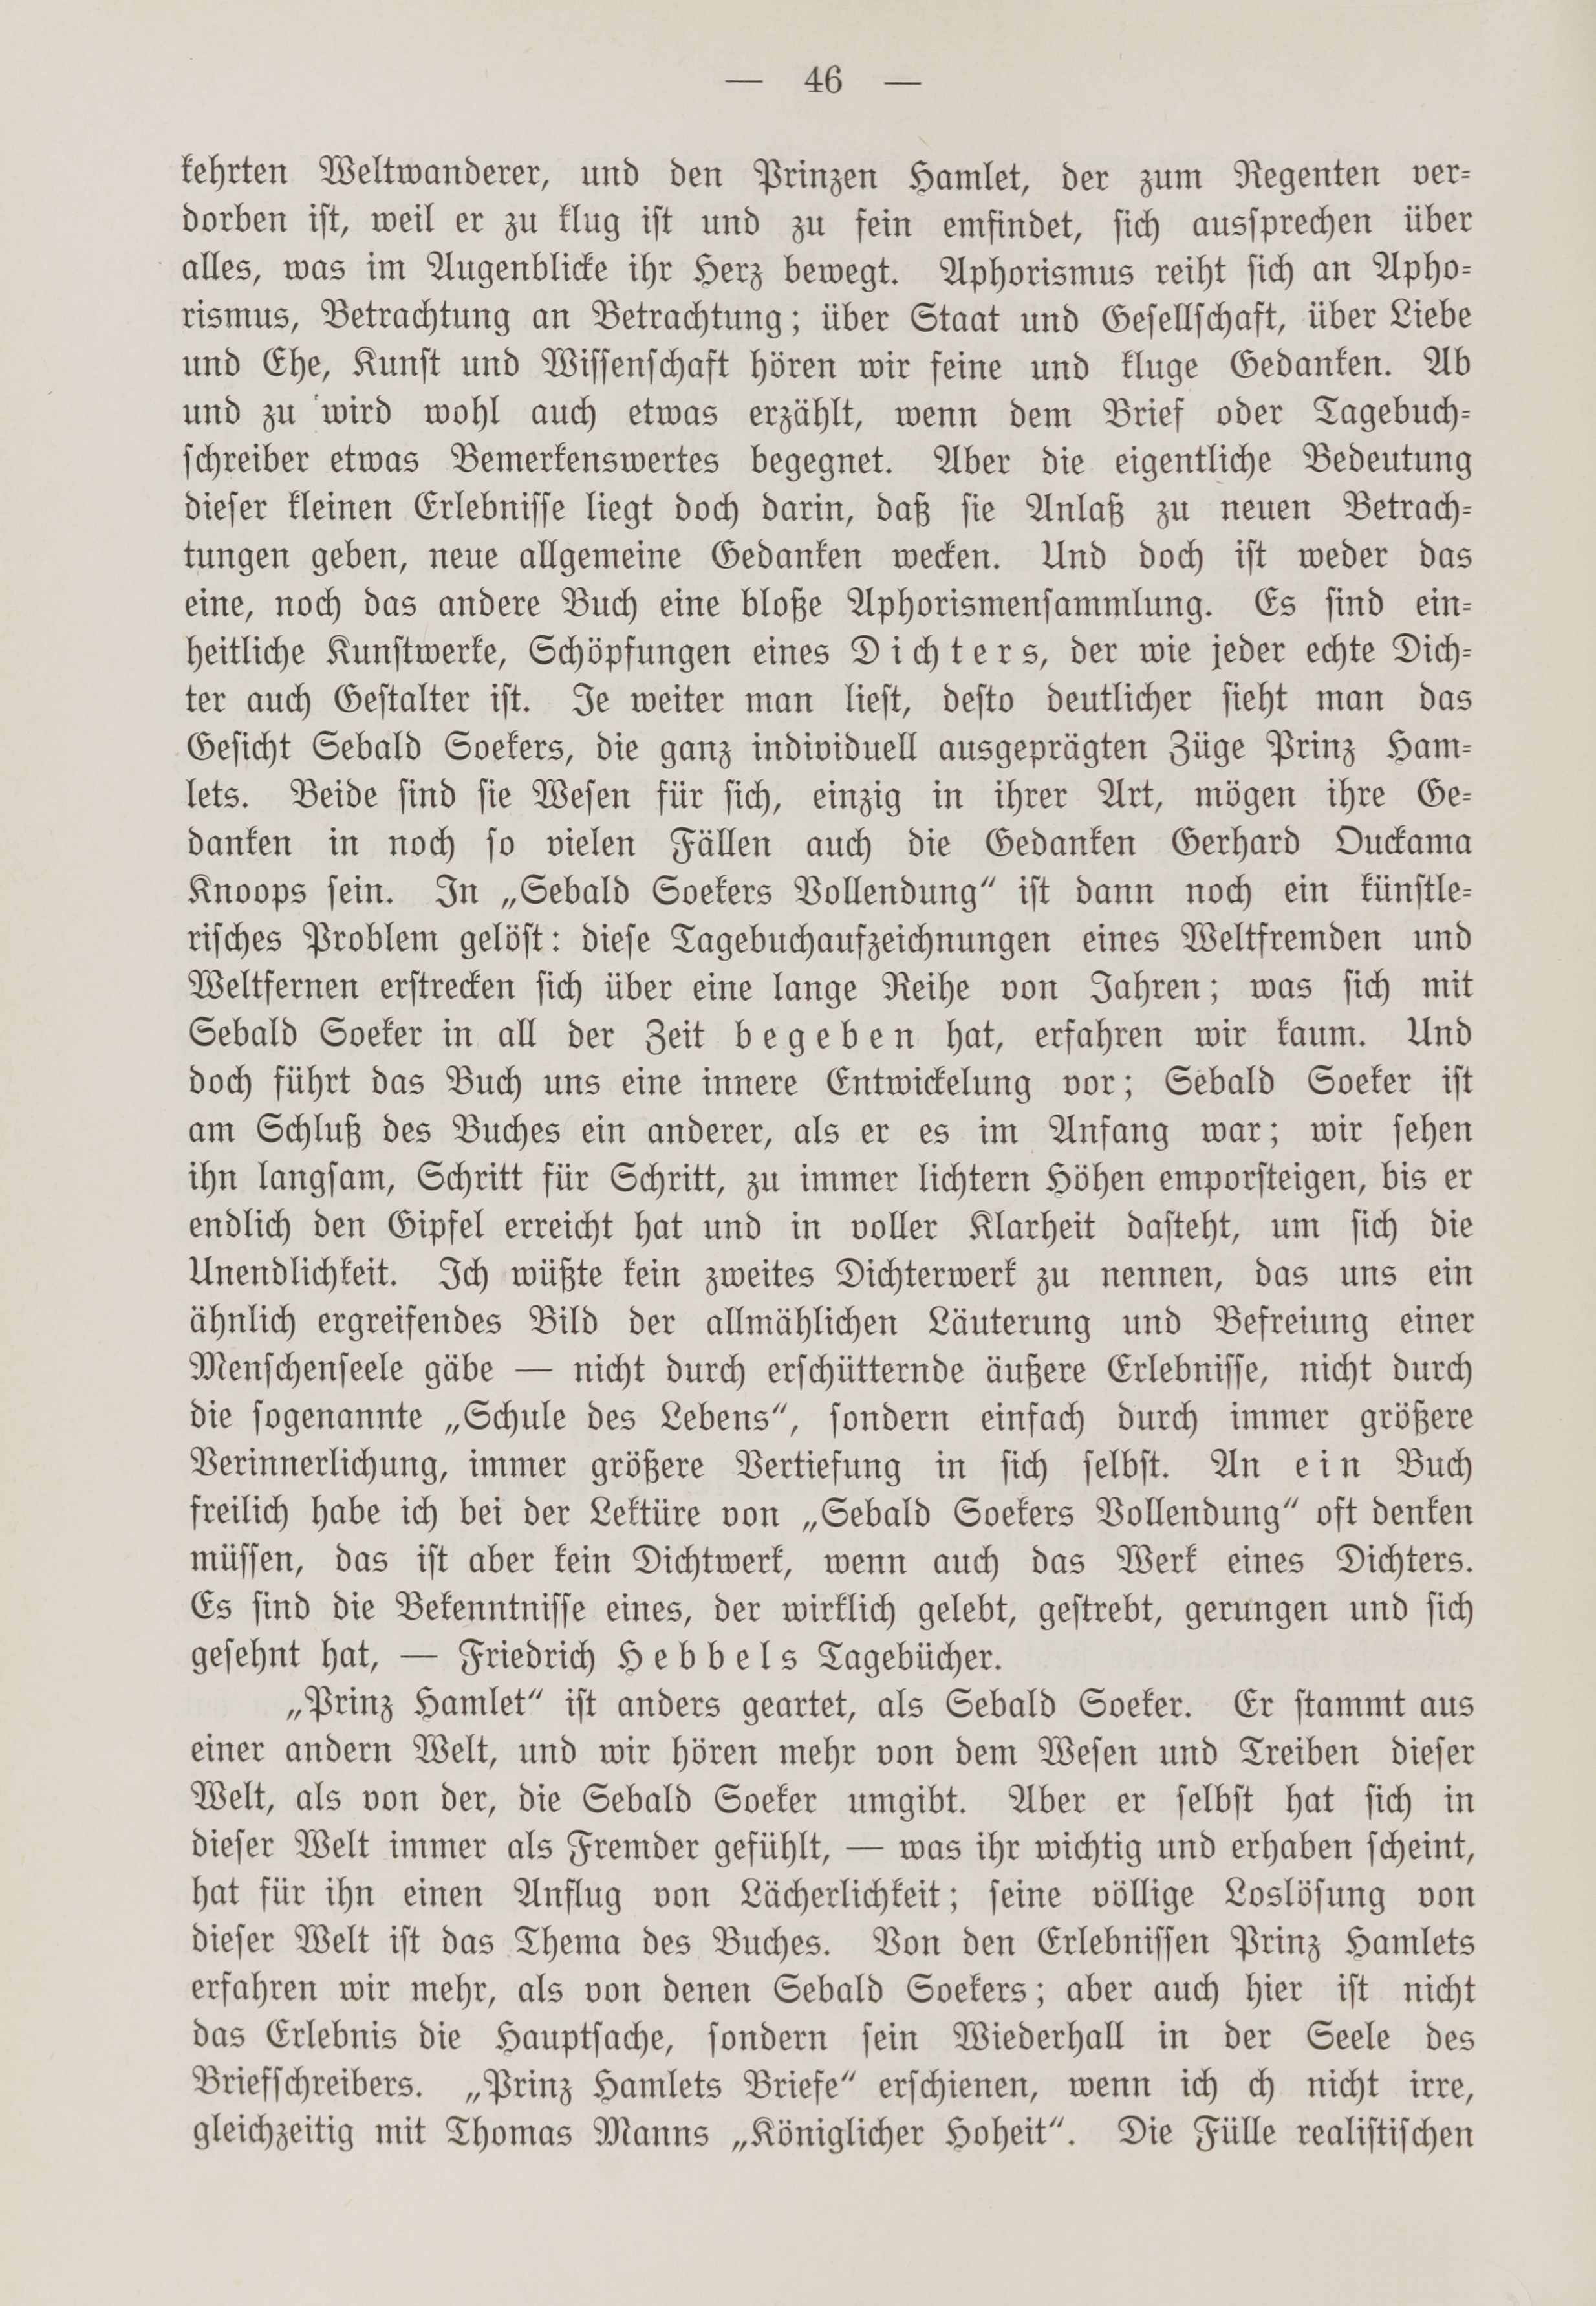 Deutsche Monatsschrift für Russland [1] (1912) | 53. (46) Main body of text